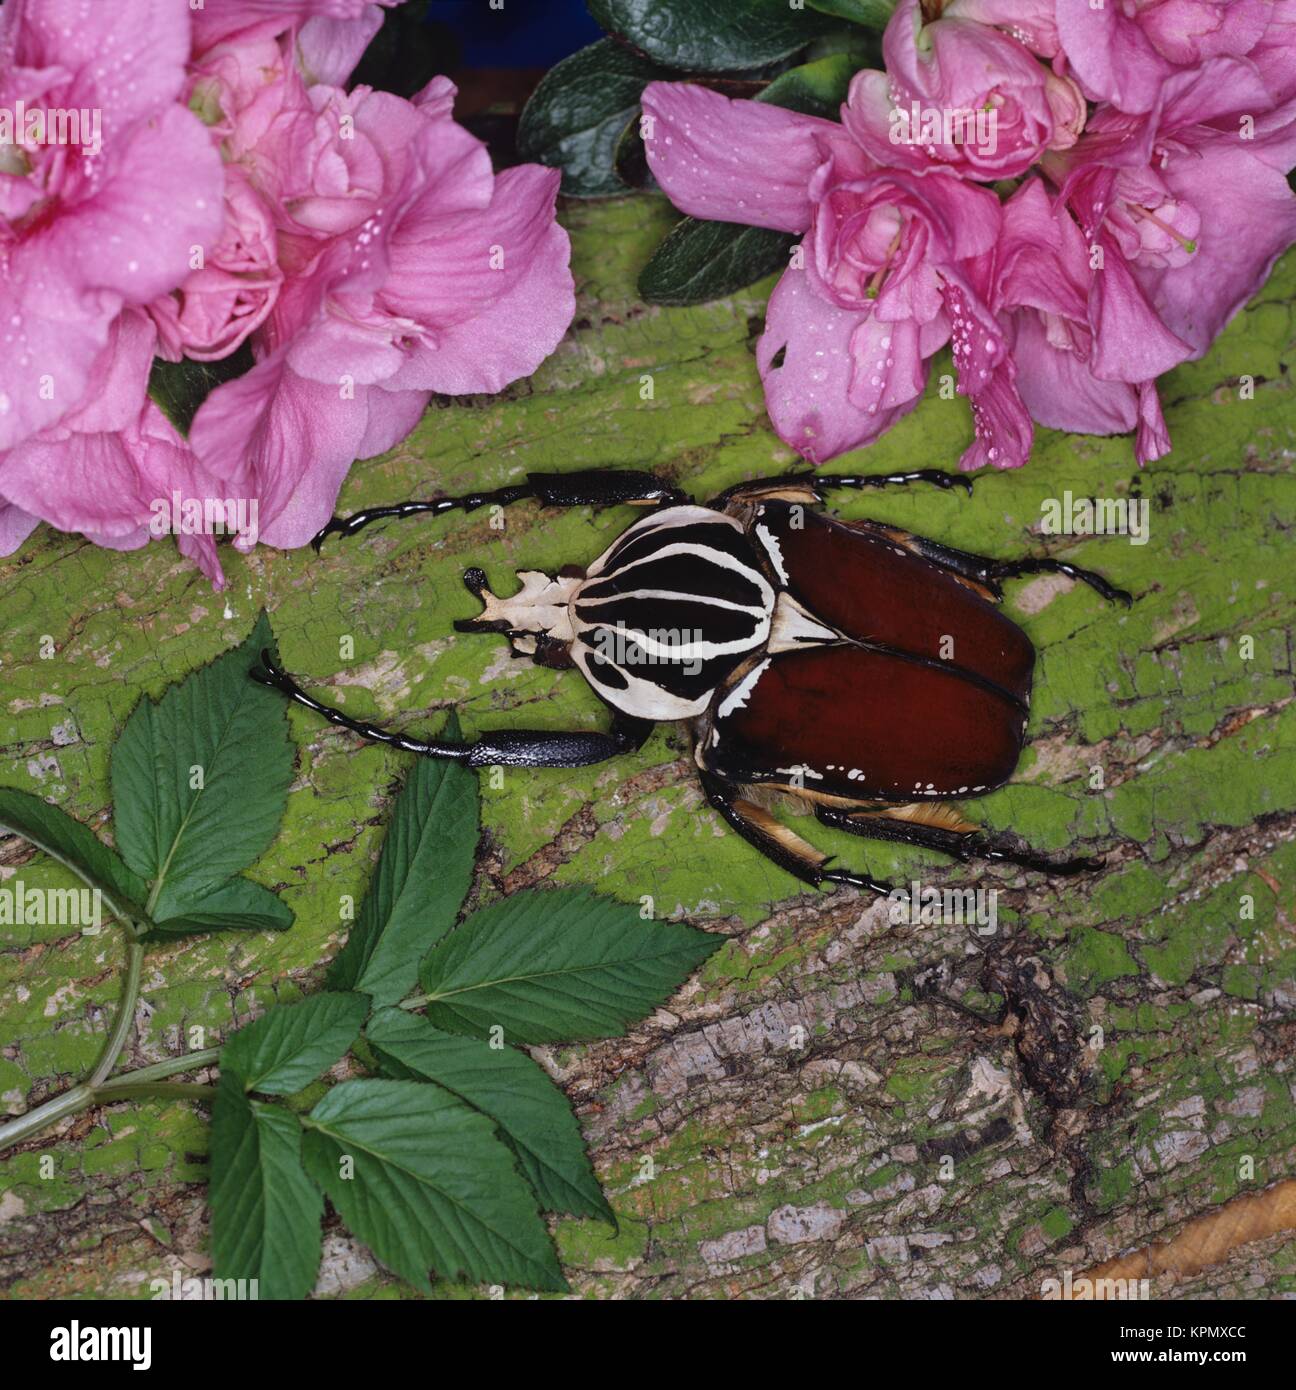 Tropischer männlicher Goliathkäfer auf rosa Blüte. Die Käfer sind in Westafrika und Zentralafrika beheimatet, wo sie Regenwälder und Baumsavannen bewohnen. Sie sind nachtaktiv. Körpergröße bis 10 cm Länge. Foto Stock